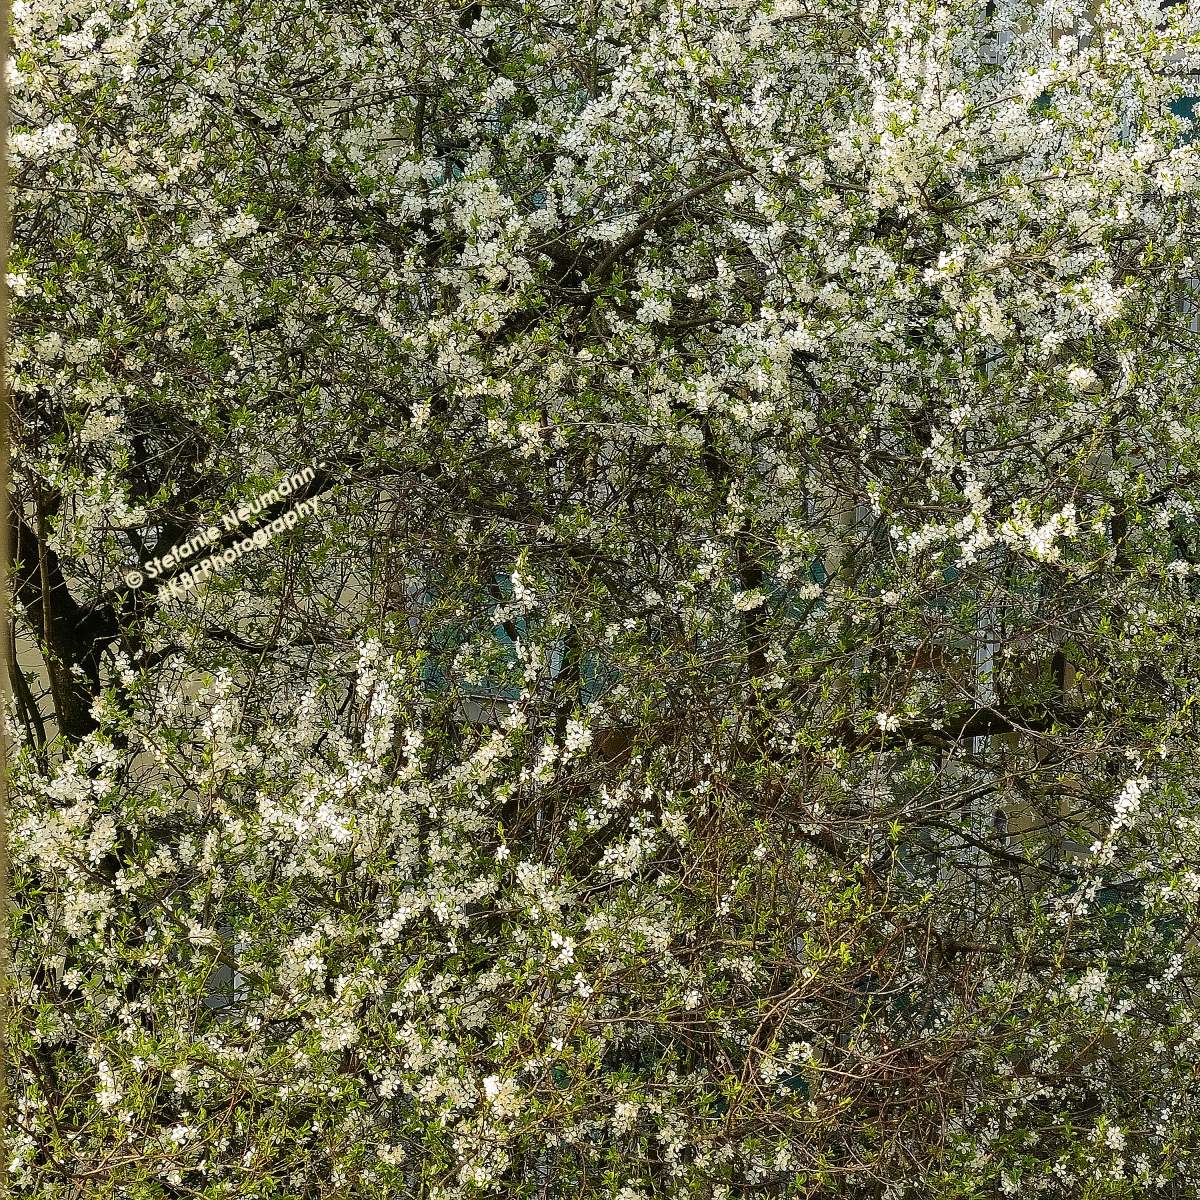 KBFB_2022-04-26-12 © Stefanie Neumann - #KBFPhotography – All Rights Reserved. Bildbeschreibung – Image Description: Pflaumenbaum in weißer Blüte mit jungen grünen Blättern. Plum-tree in white bloom with young green leaves.